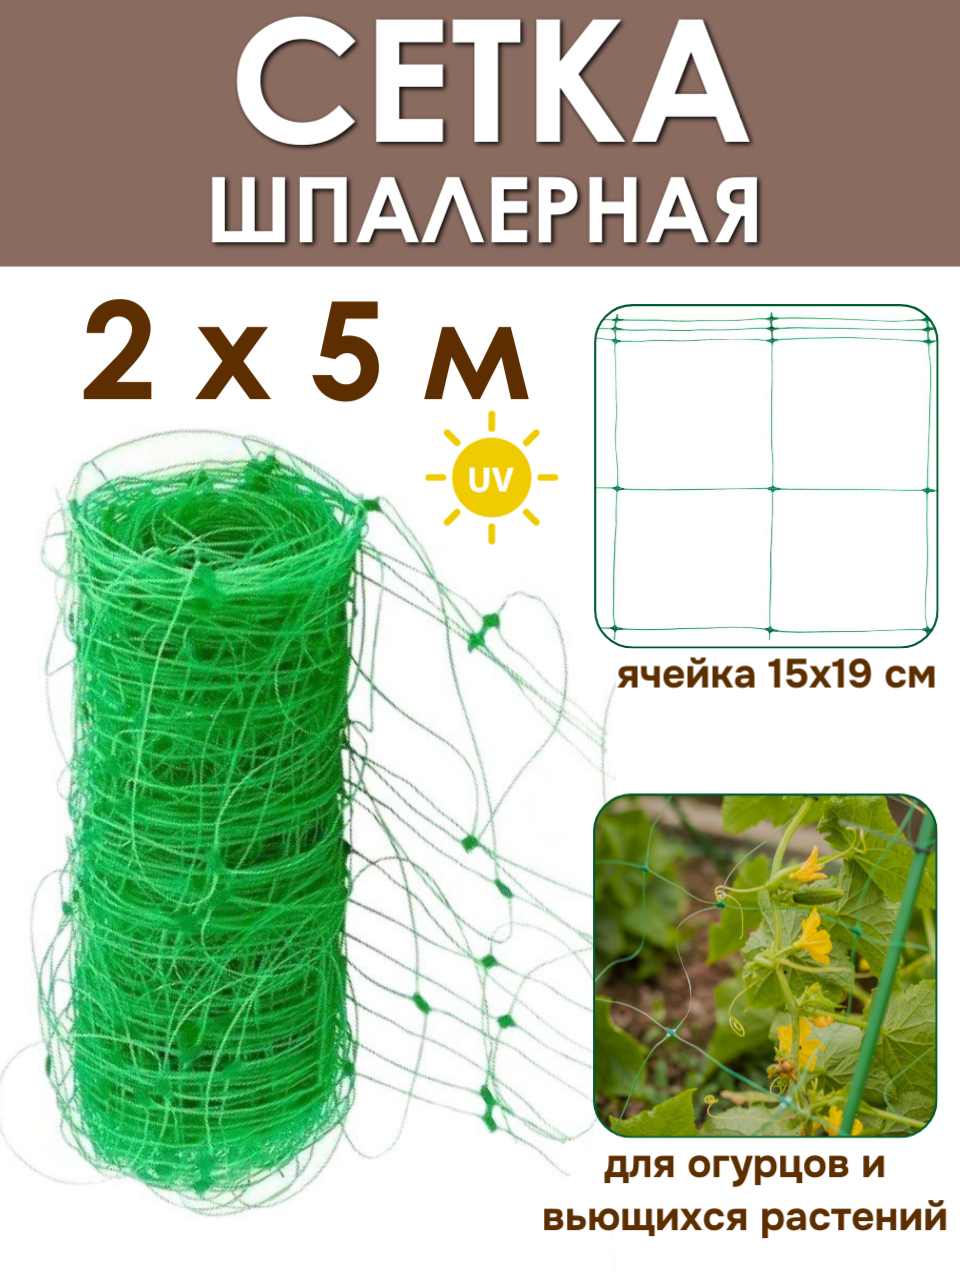 Сетка шпалерная садовая 2х5 м (10 м2), для поддержки огурцов и вьющихся растений от ProTent, цвет хаки